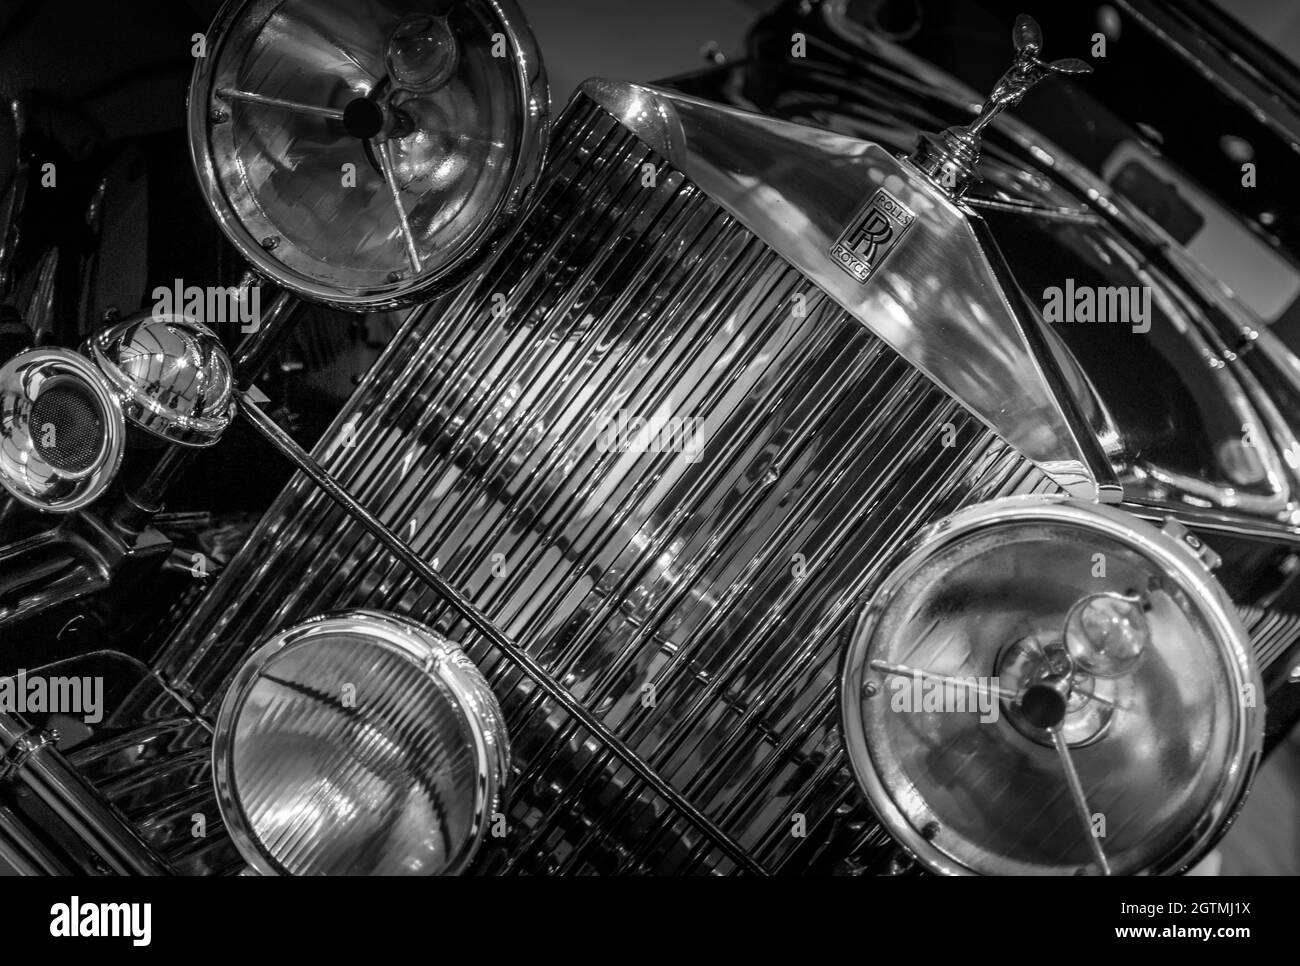 Image en noir et blanc de Rolls Royce antique avec plusieurs phares dans le musée de l'automobile près du Cap. Personne. Banque D'Images